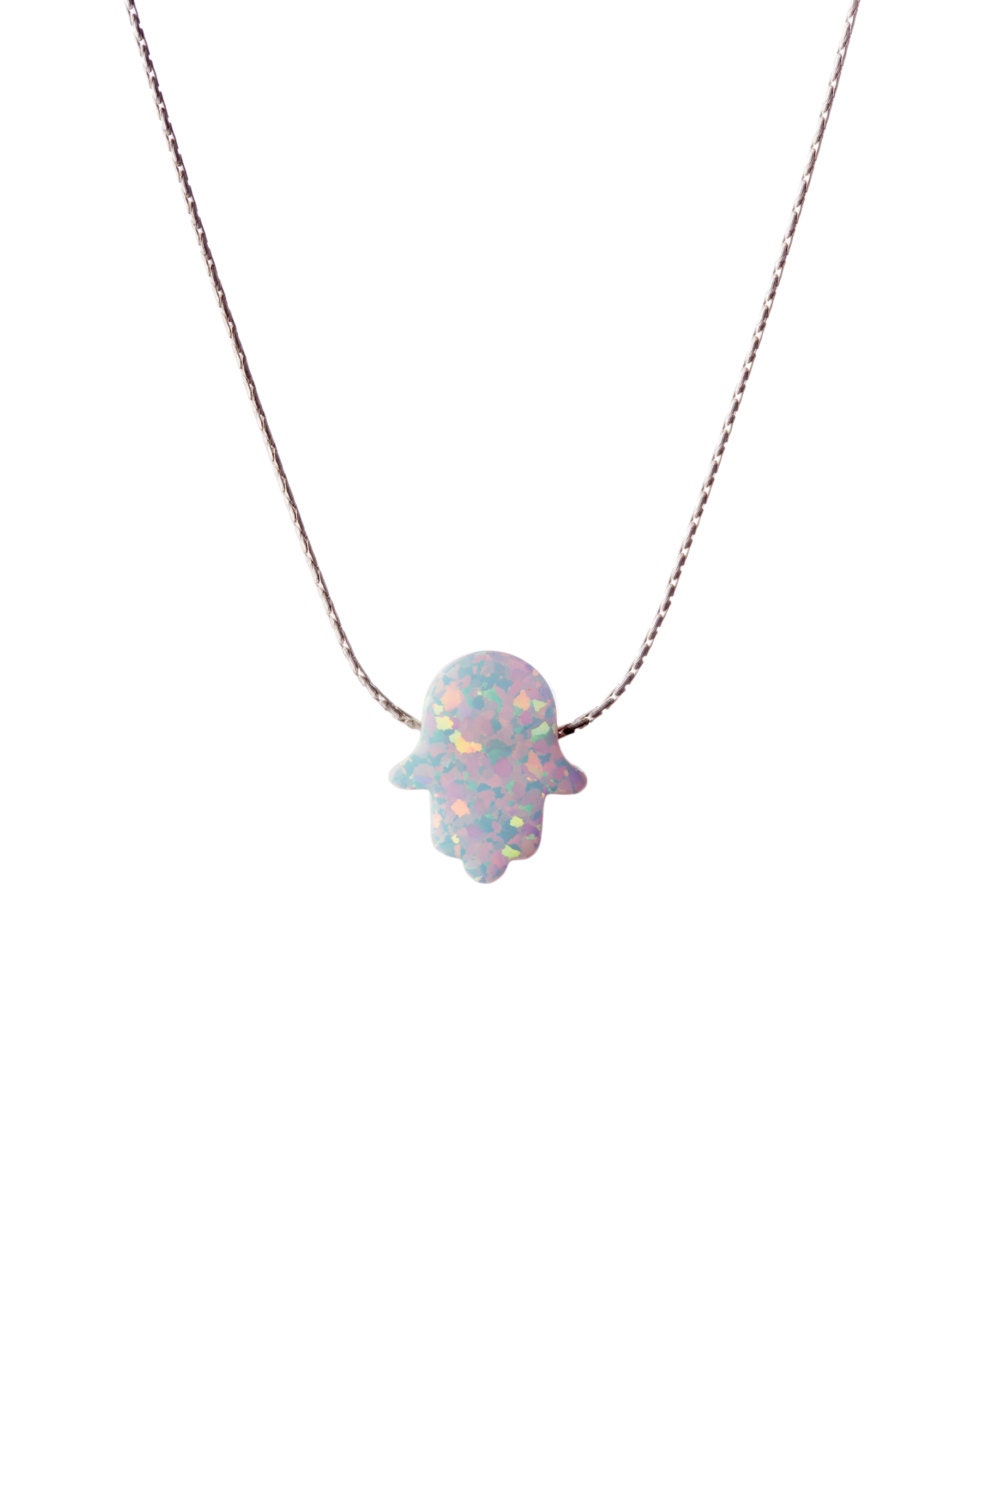 Hamsa Opal Necklace Dainty 925 Silver Necklace Pendant Evil | Etsy